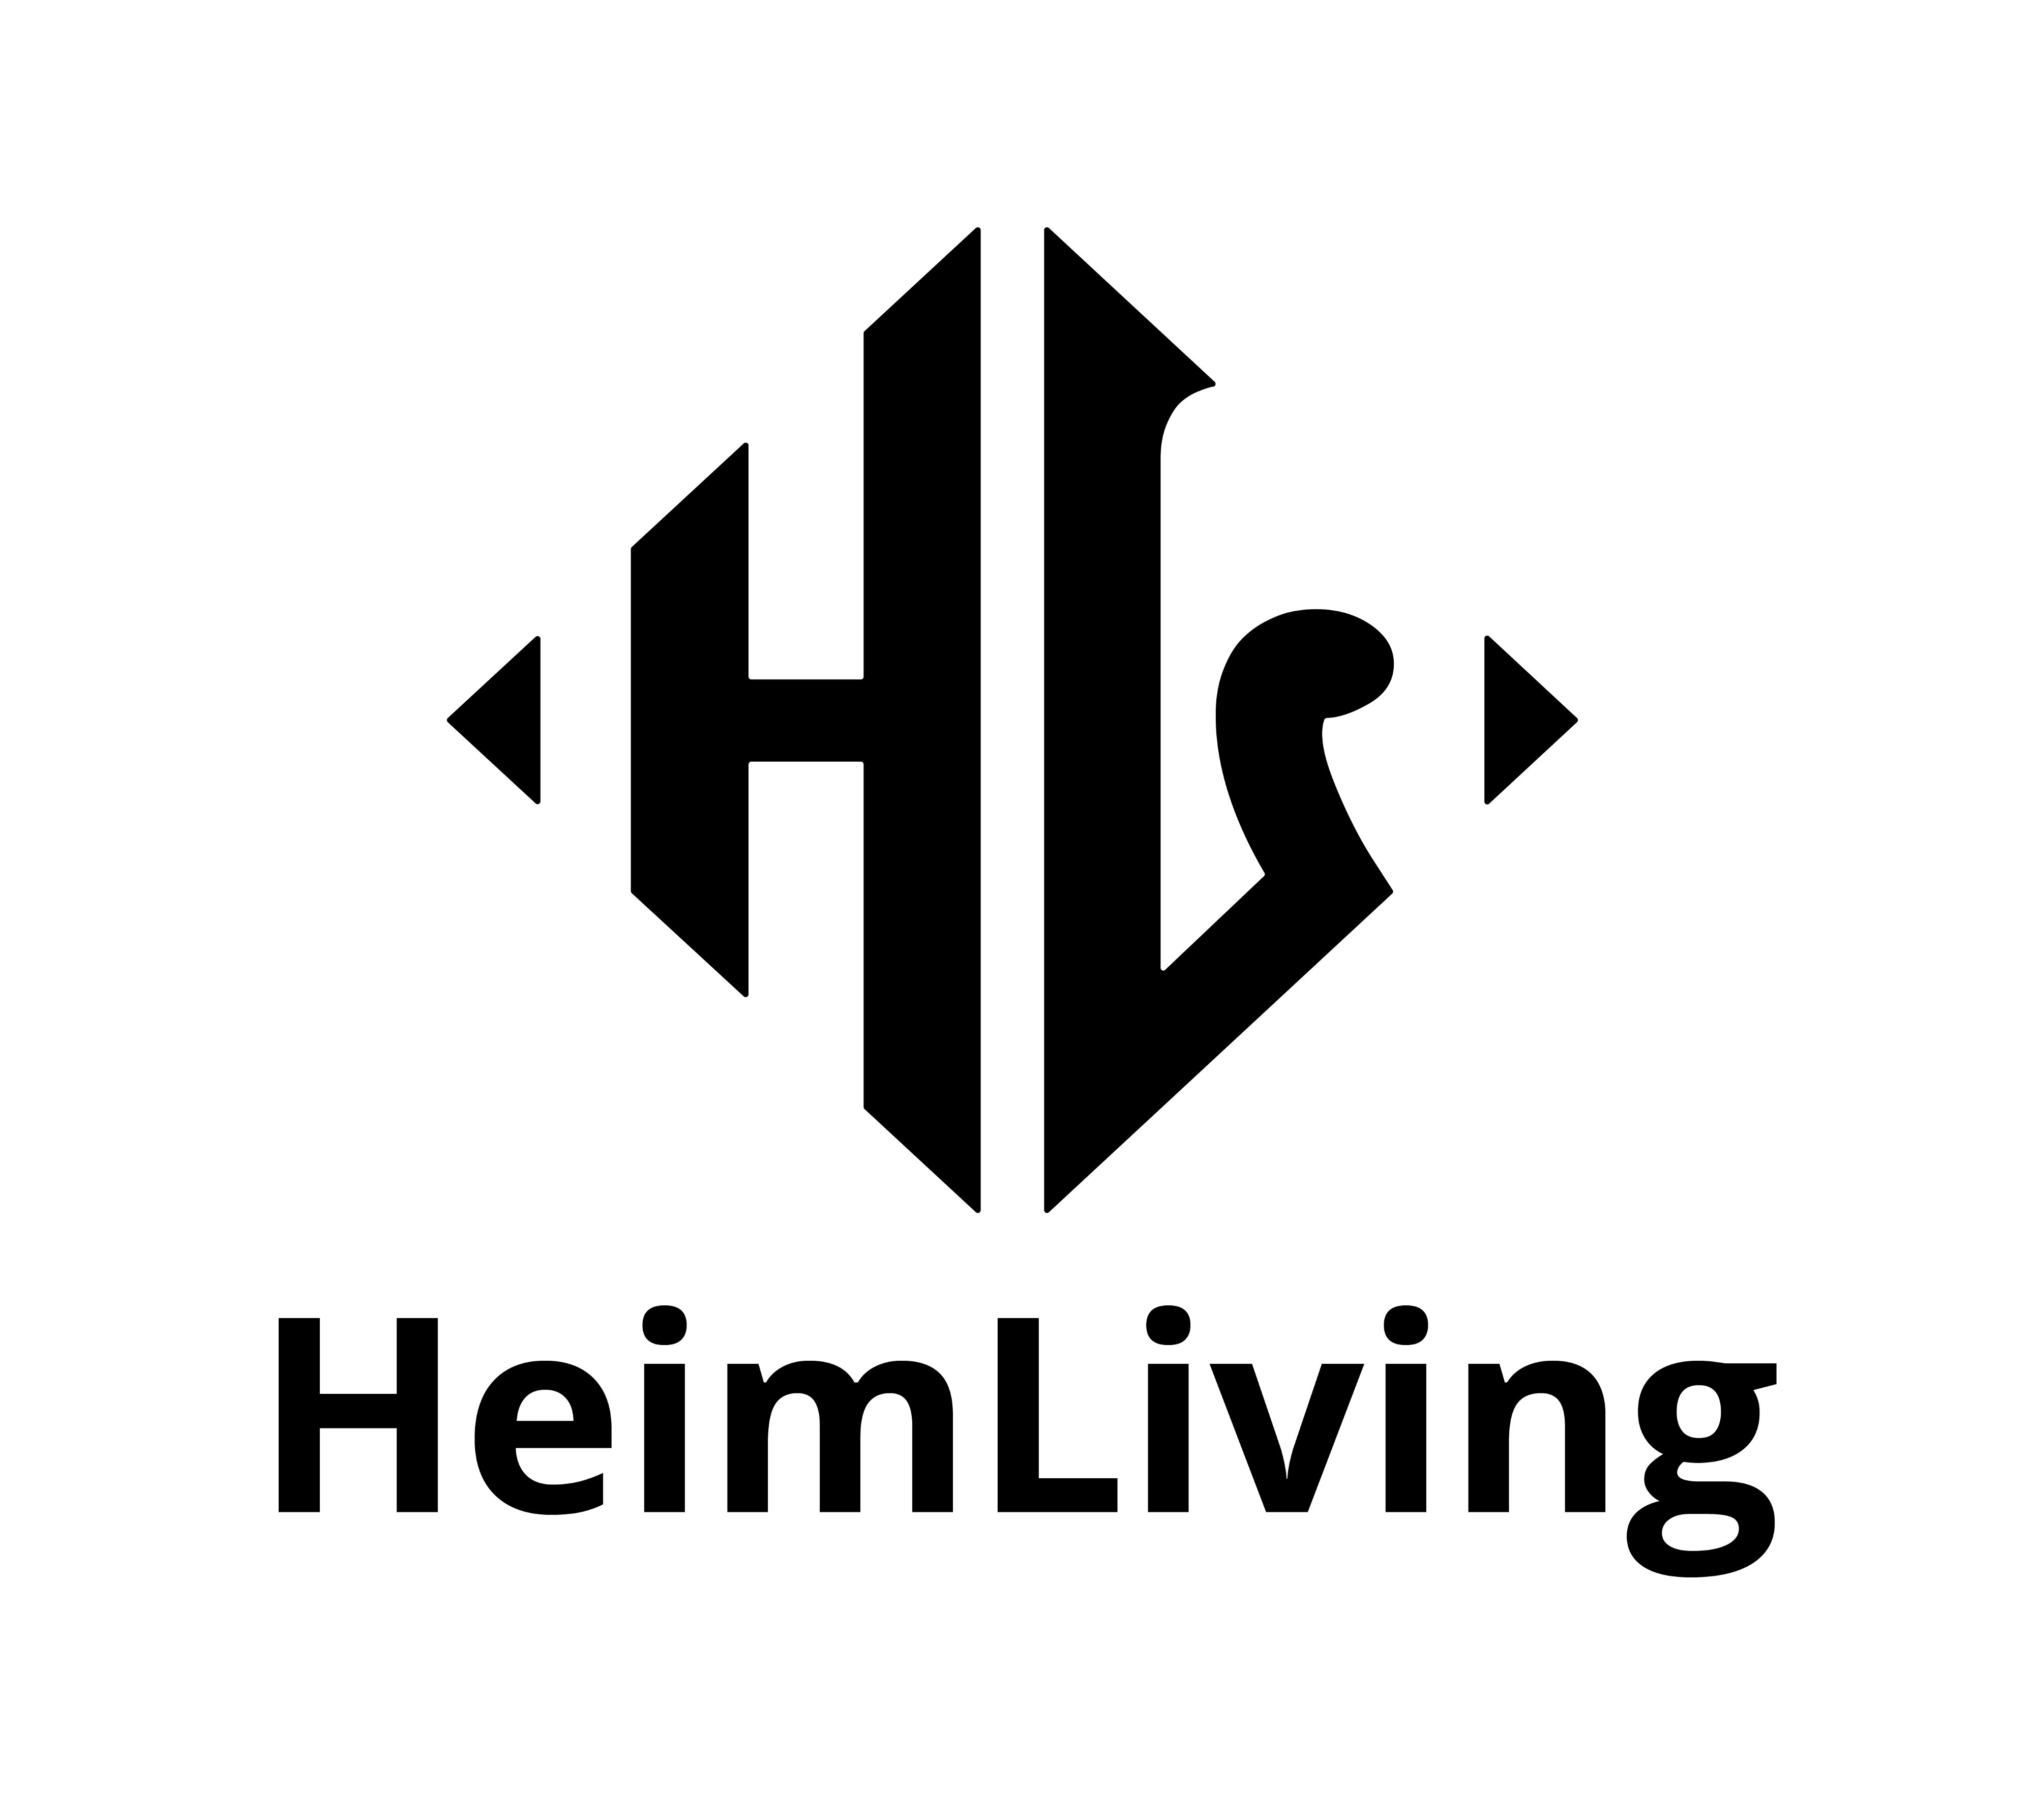 HeimLiving